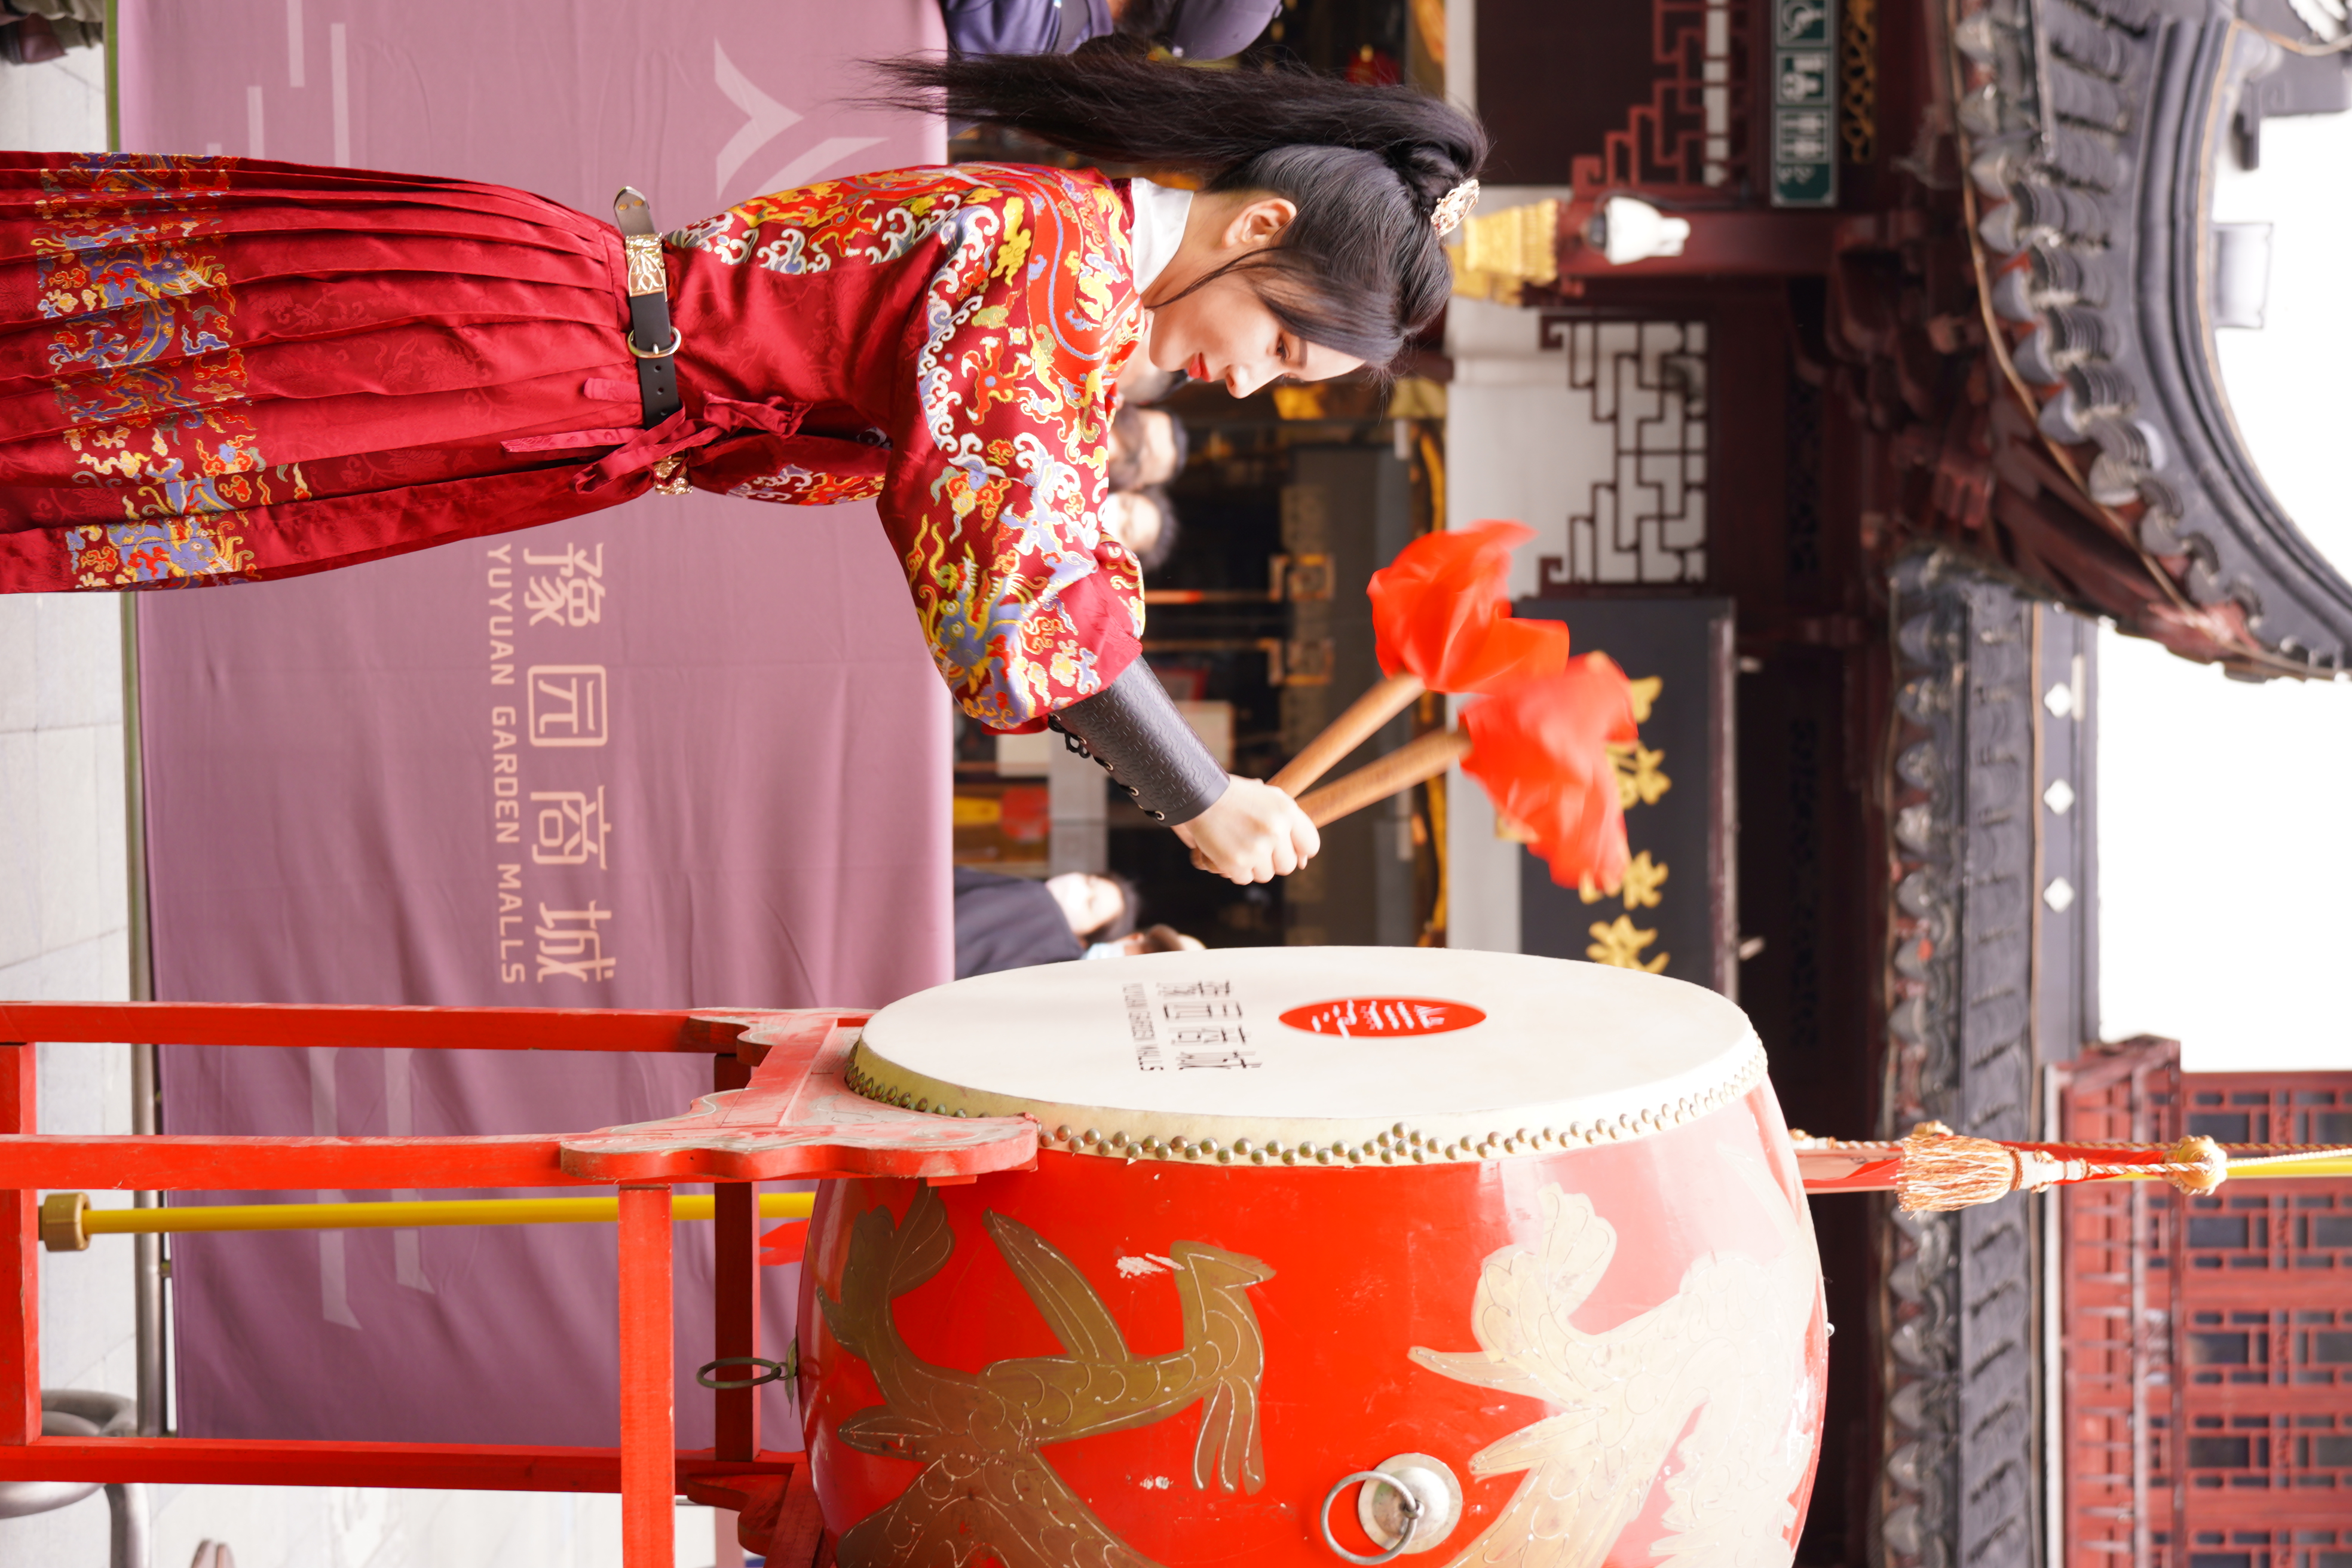 隆京文化——国风篇2022